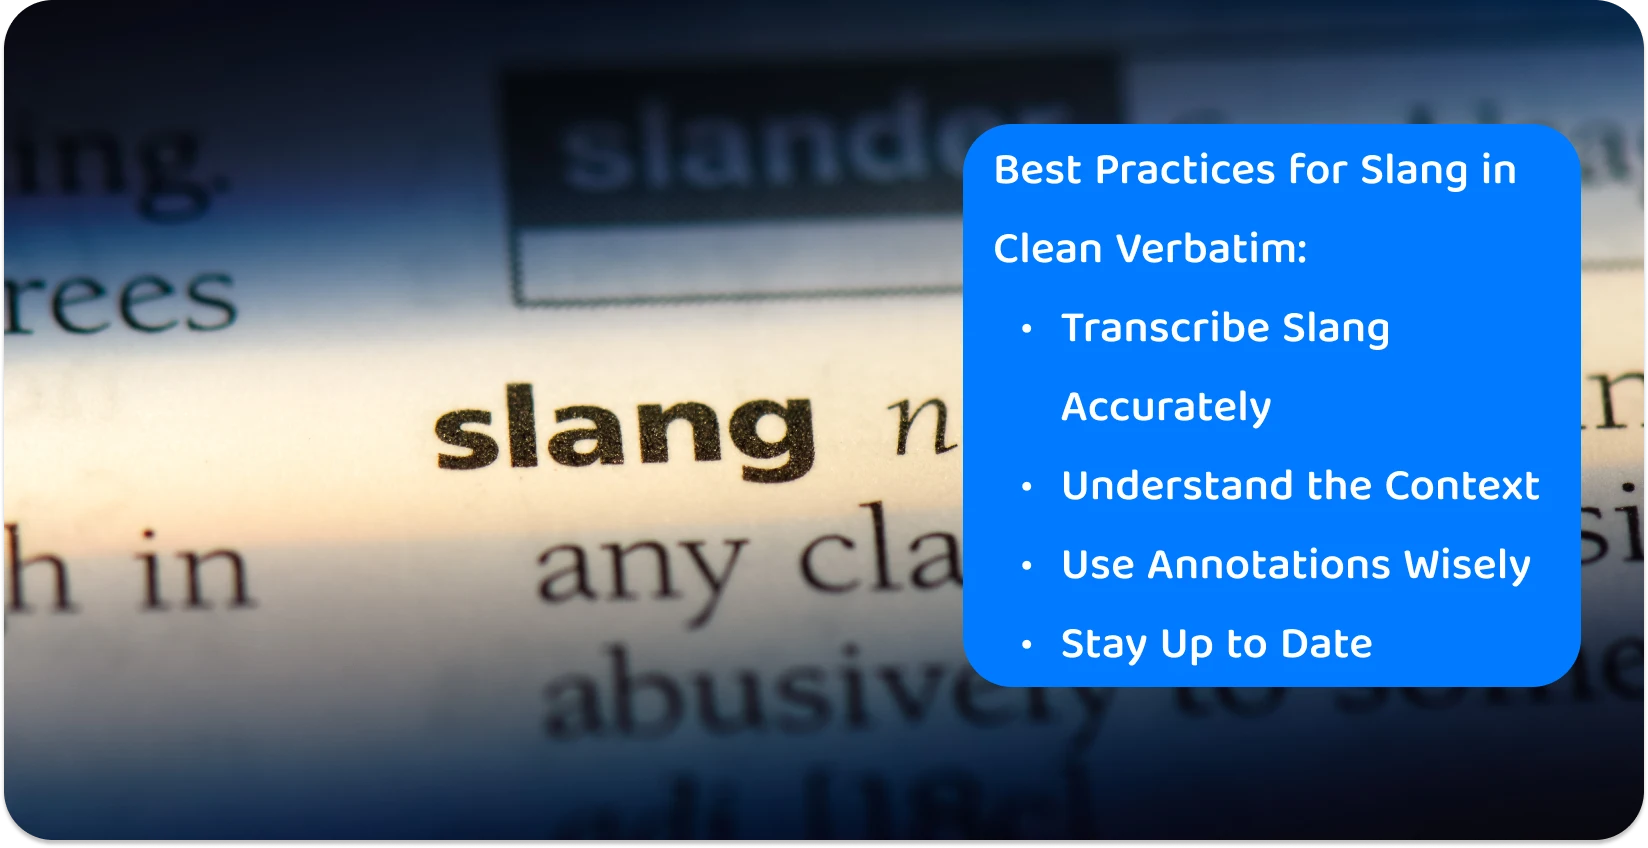 Lähikuva sanakirjan sanasta "slangi", korostaen tarkkuutta, jota tarvitaan nykyaikaisen kansankielen transkriptiokäytännöissä.